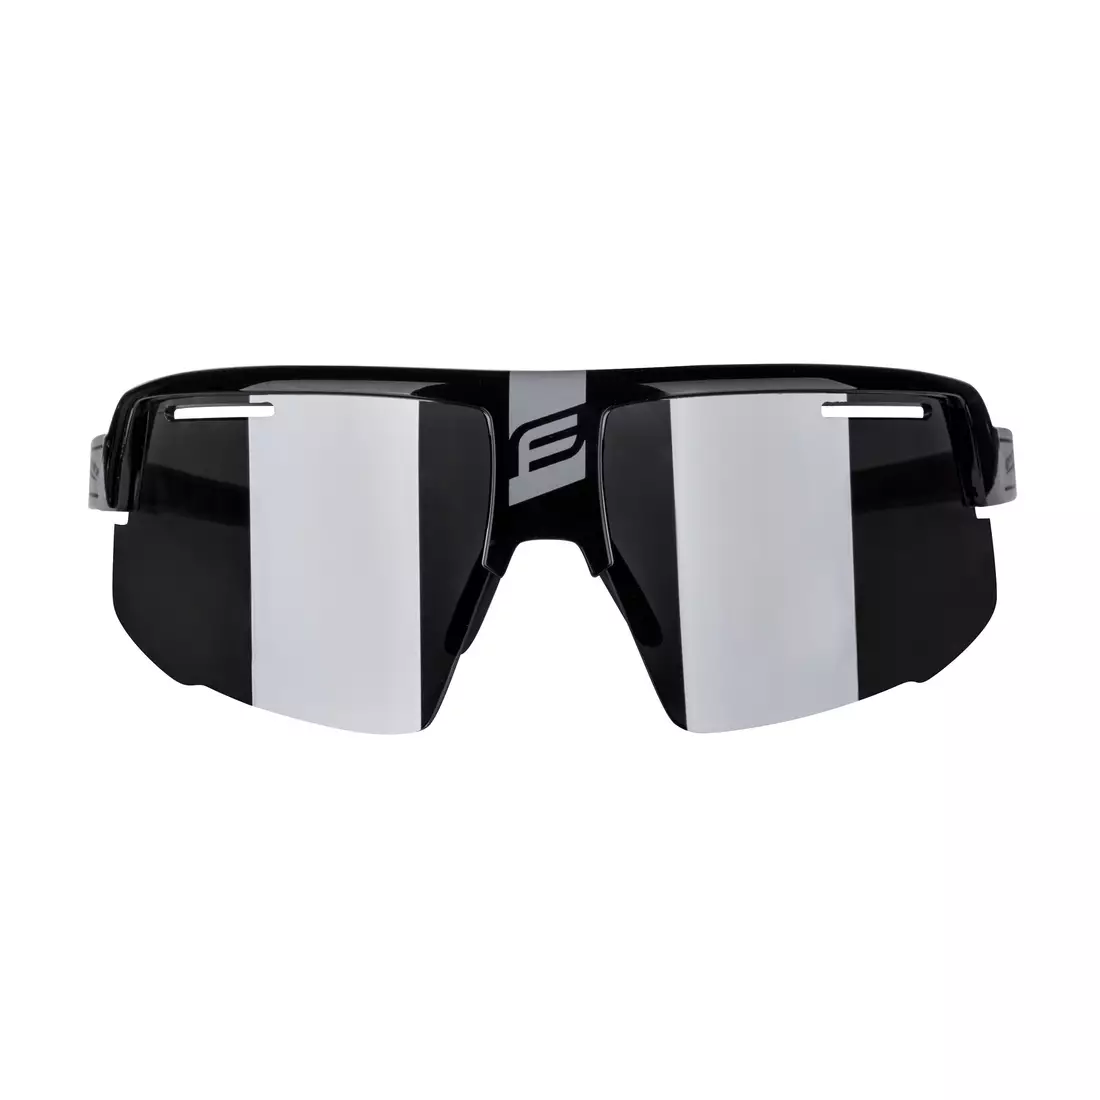 FORCE napszemüveg IGNITE, fekete / szürke, fekete lencse 910946